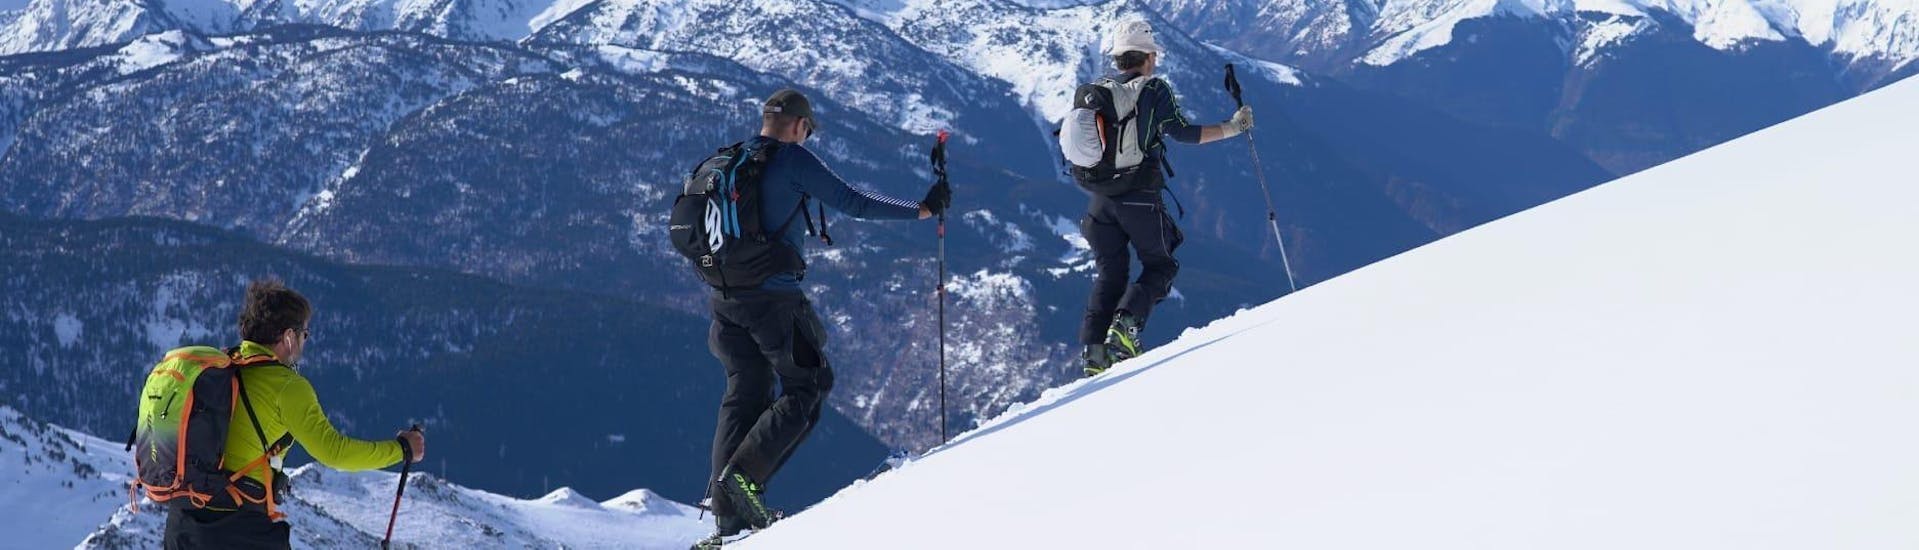 Die Tourteilnehmer gehen fleißig den Berg hinauf während der Privaten Skitour für alle Levels von Escuela Ski Cerler.